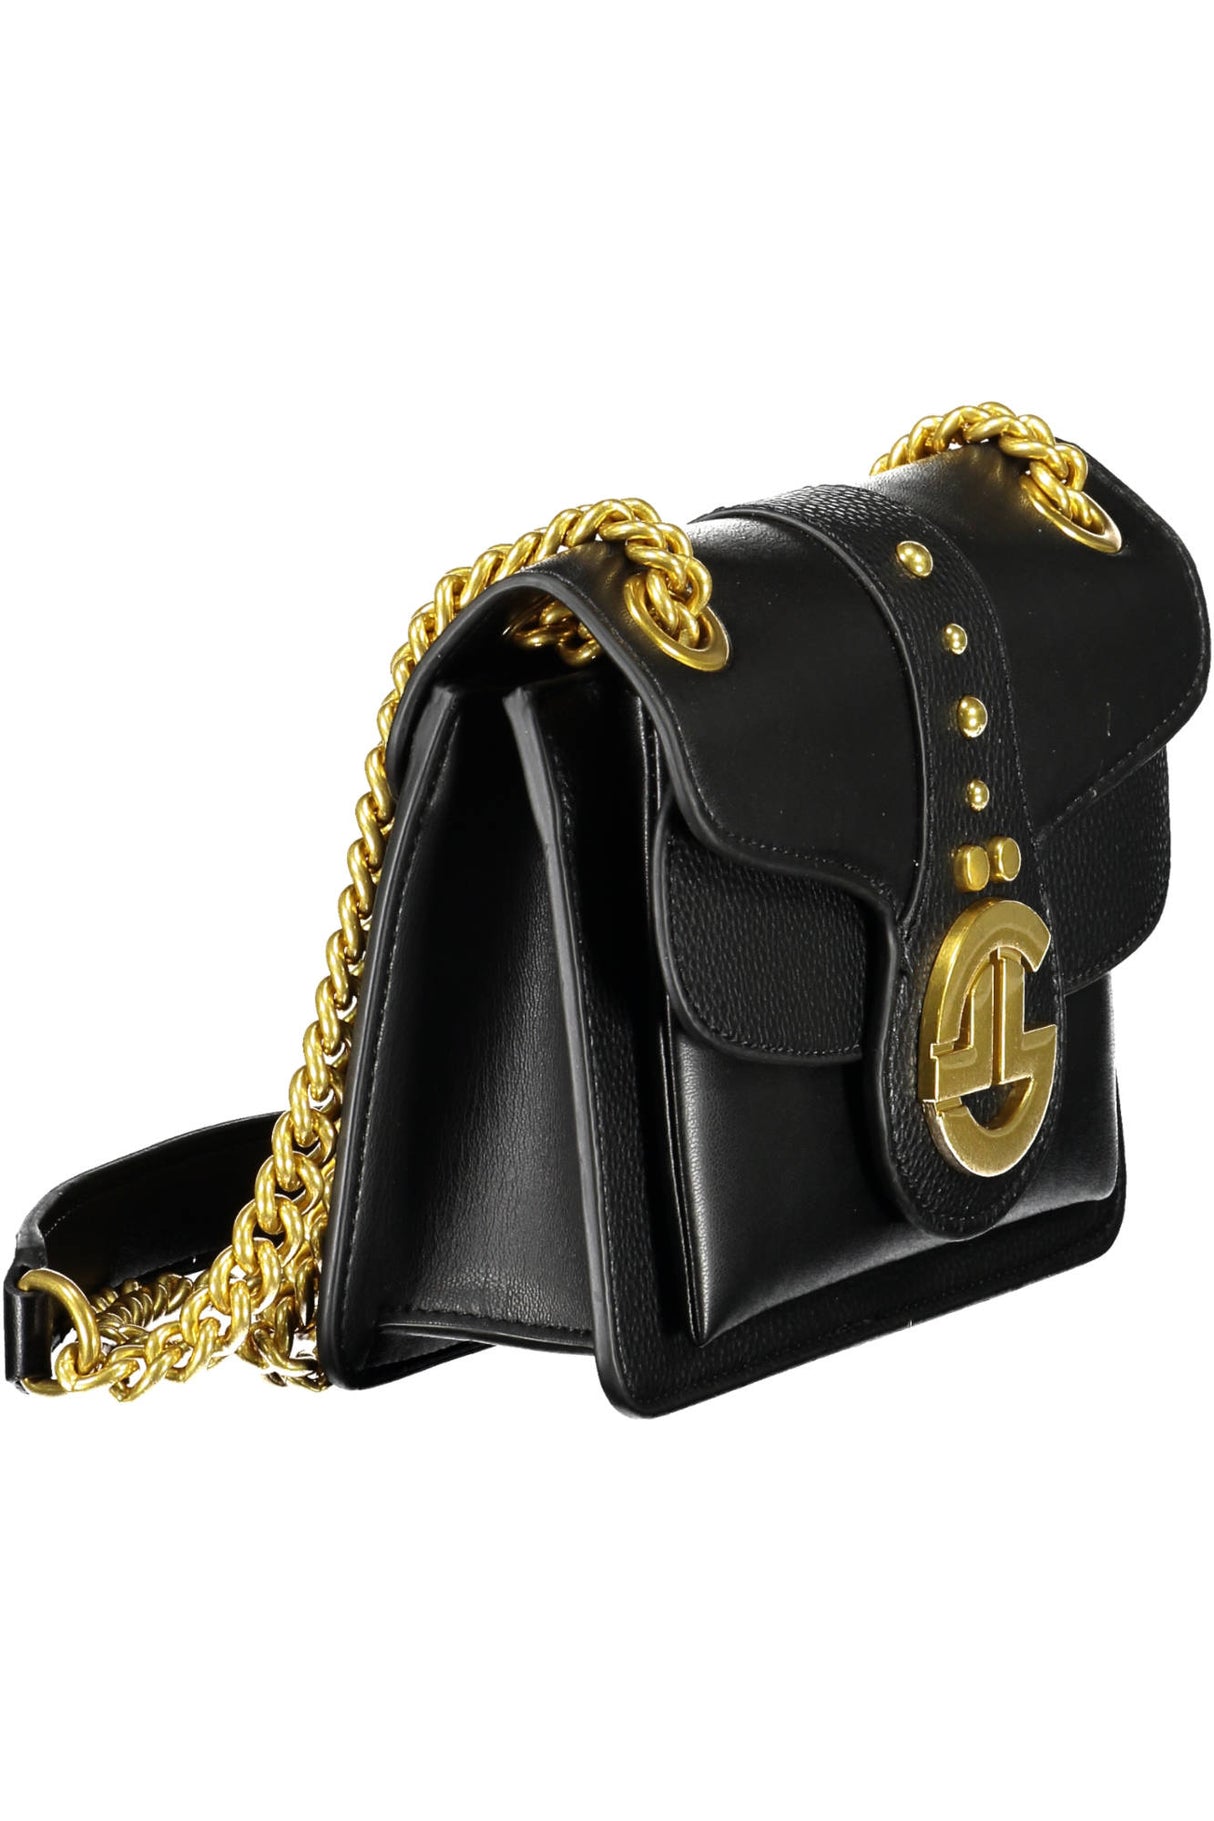 Gaelle black clutch bag with gold shoulder strap